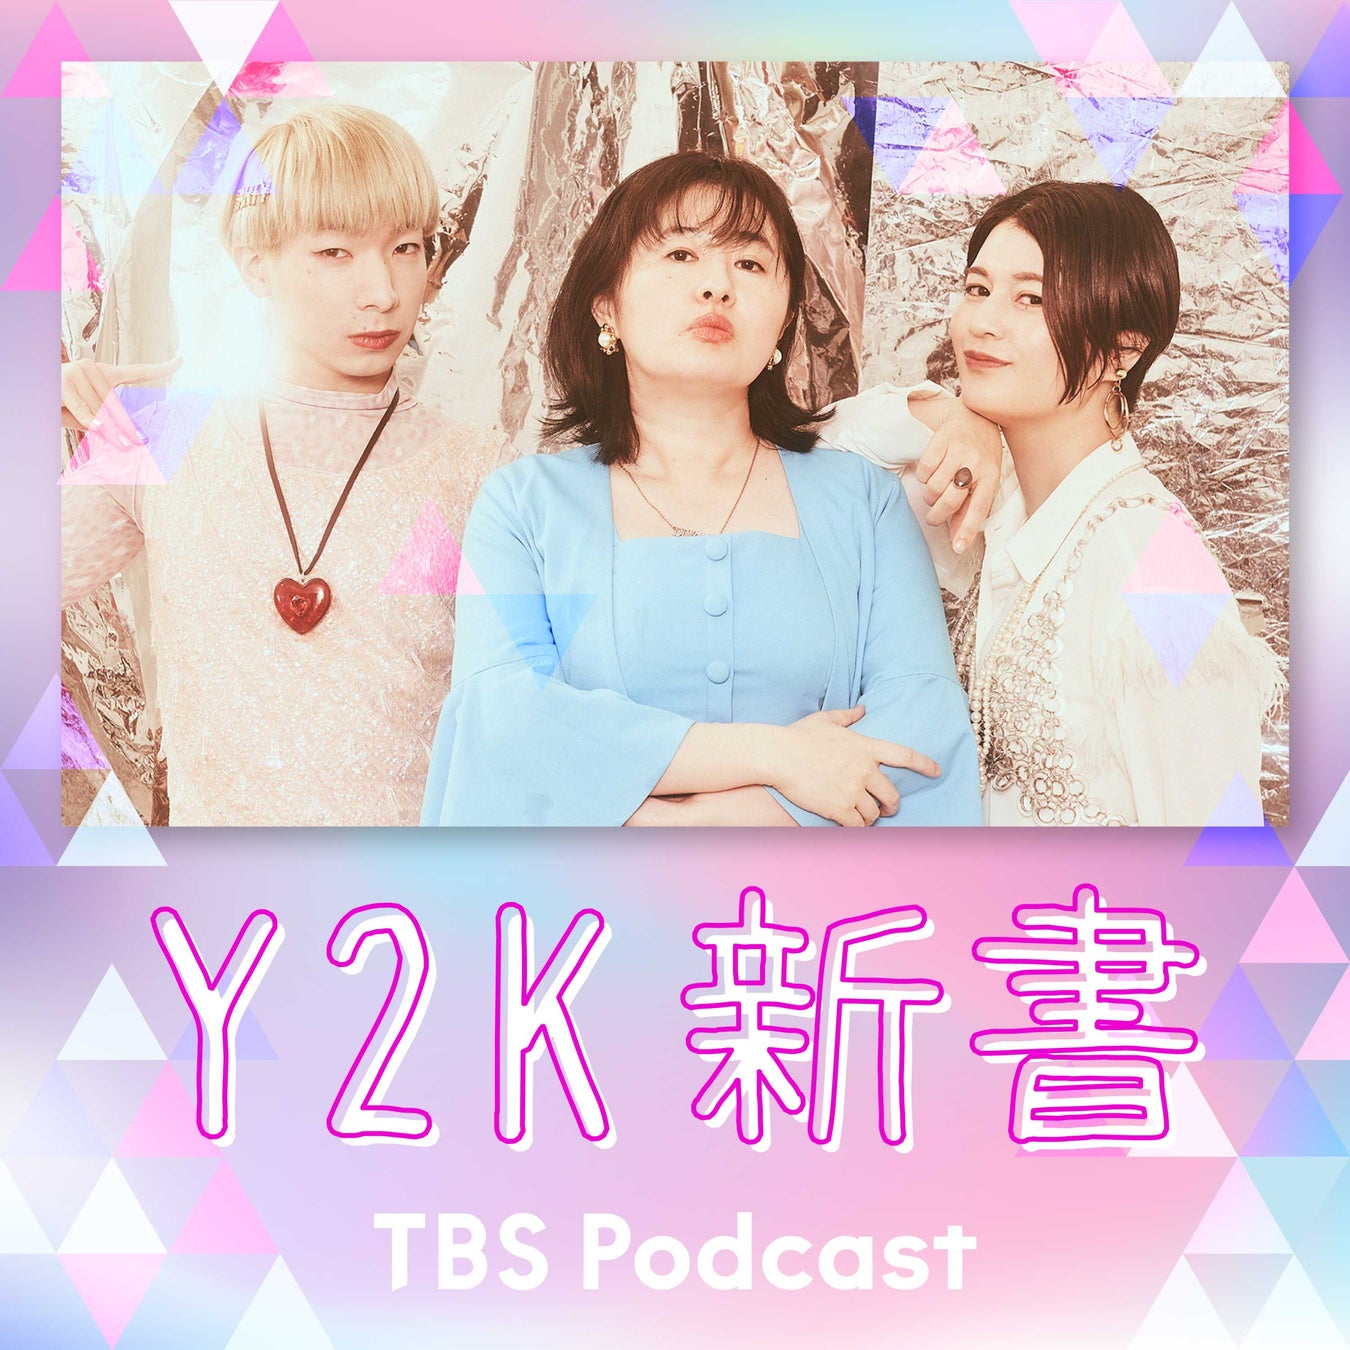 大人気TBS Podcast『Y2K新書』初のイベント開催。会場チケット即完売も、オンライン配信あり！